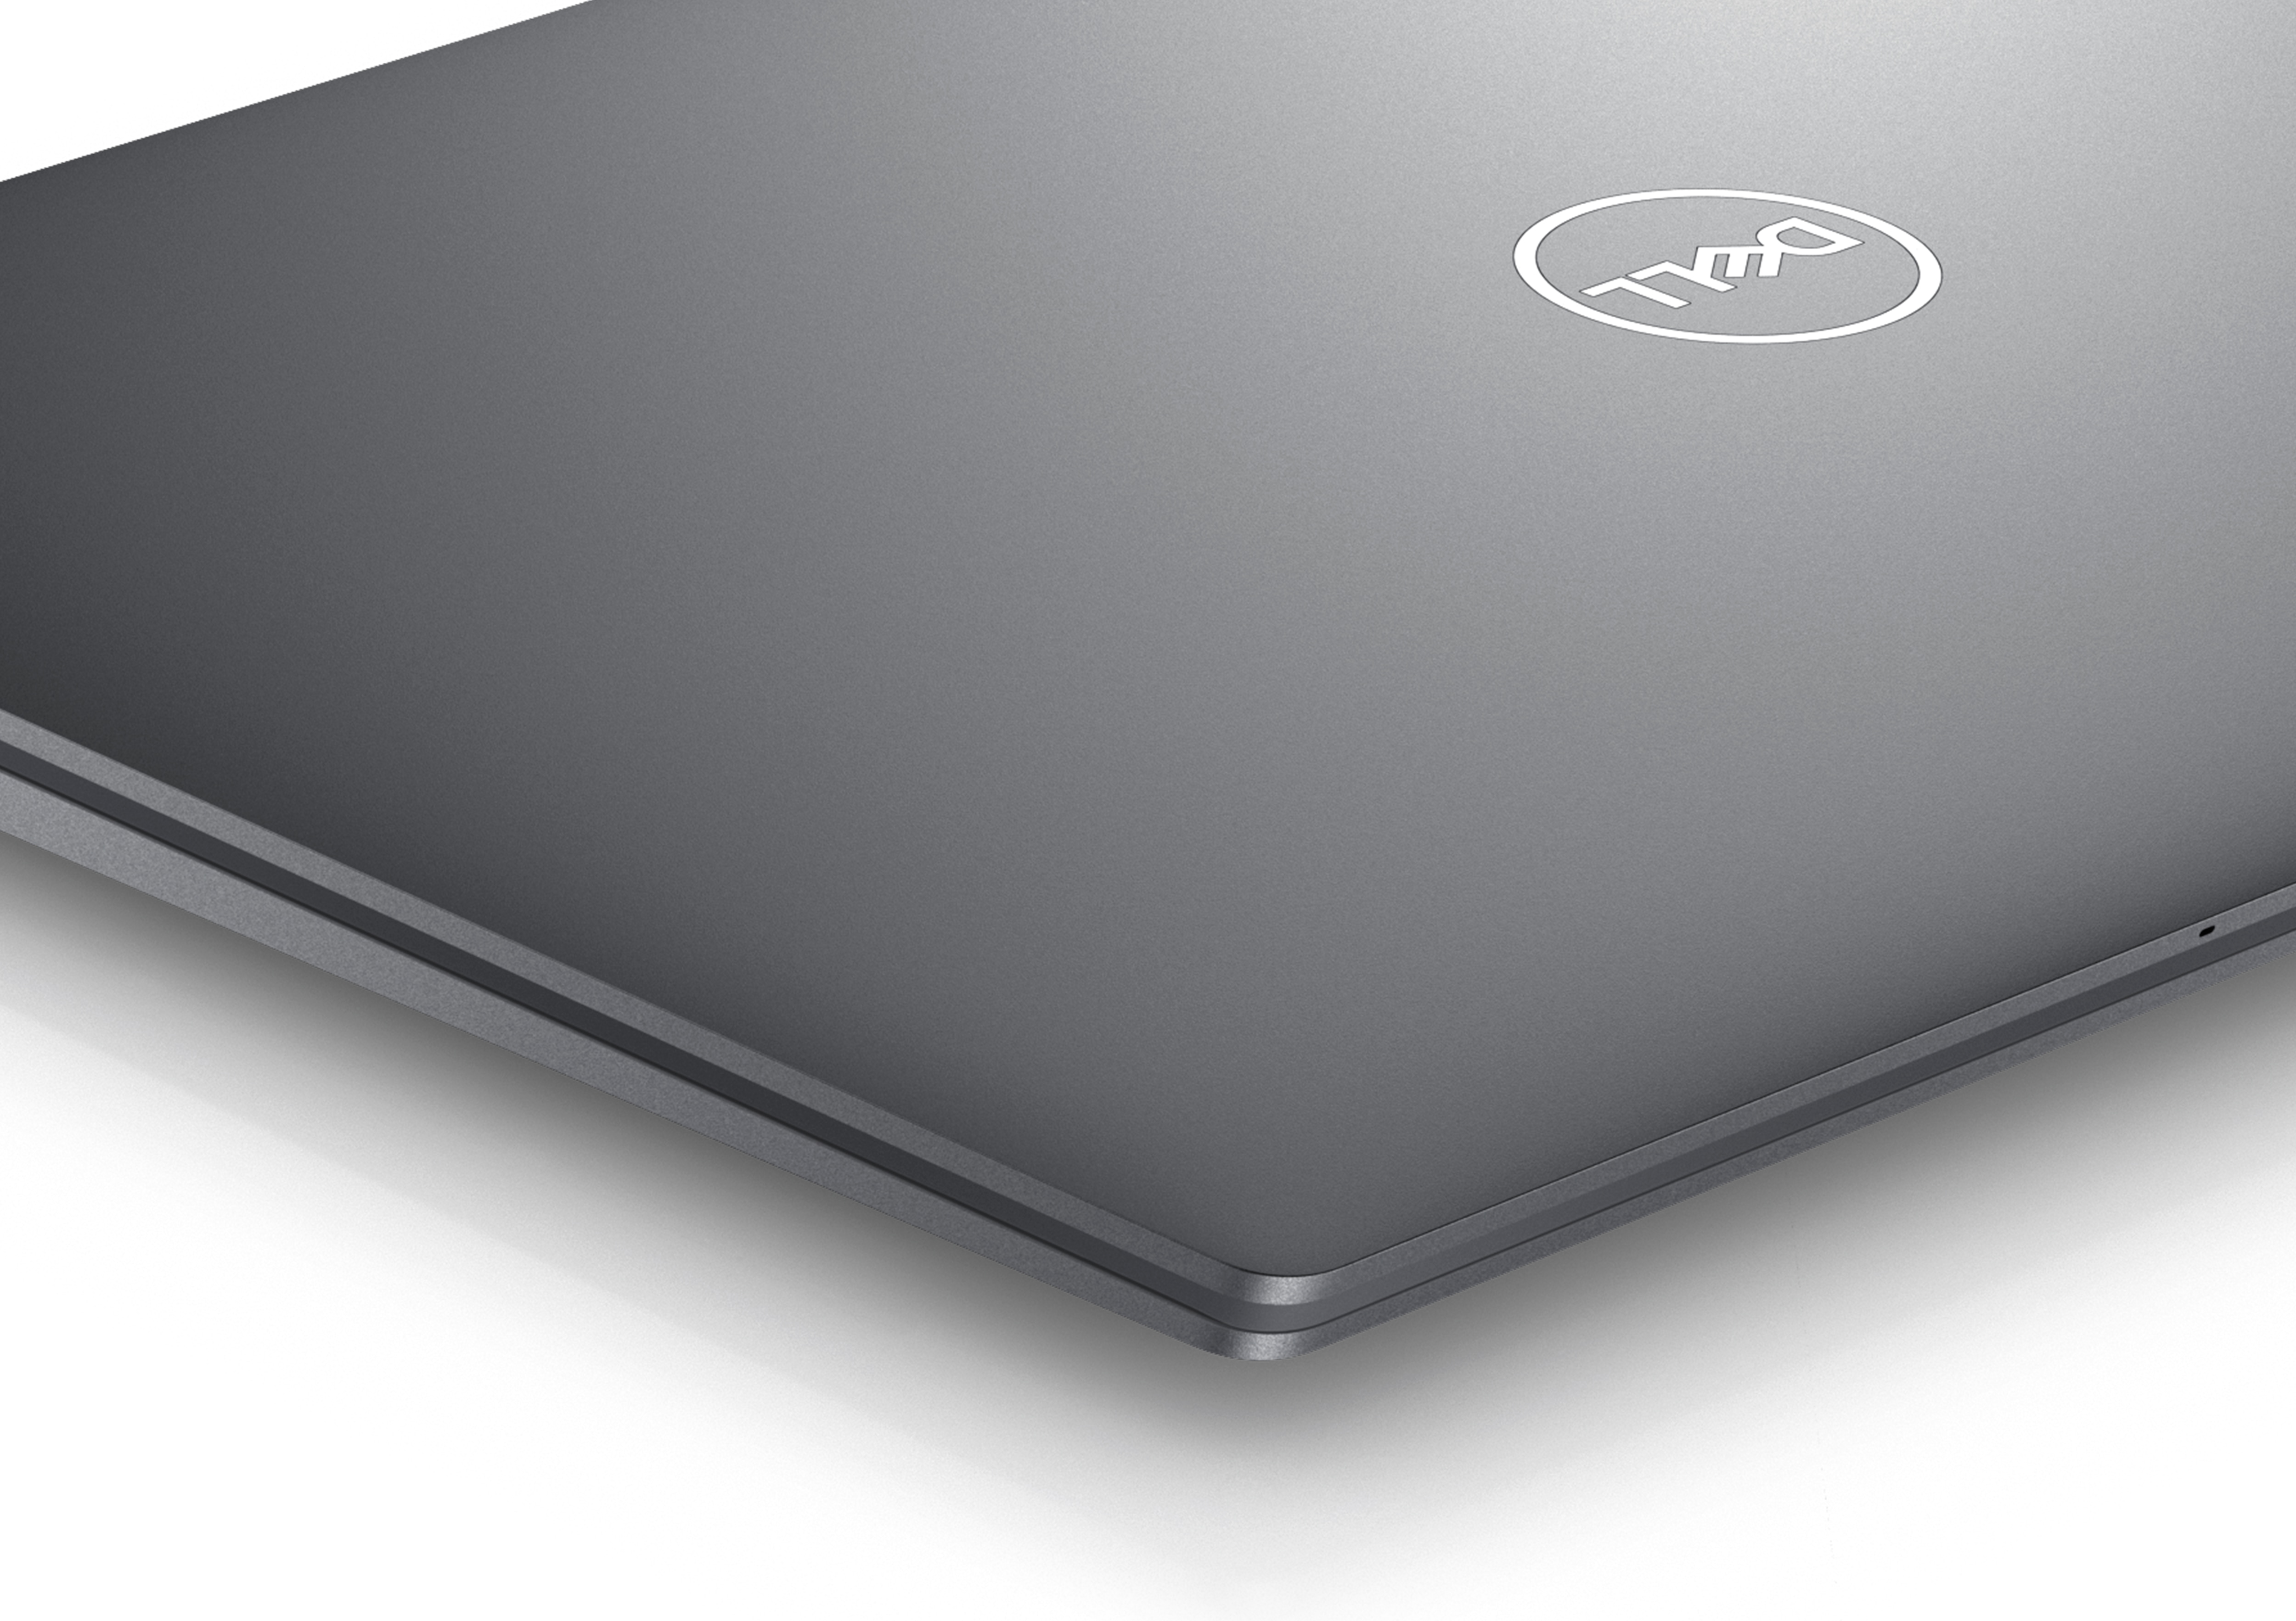 Imagem de um Dell XPS 13 9320 fechado com o logotipo da Dell visível.